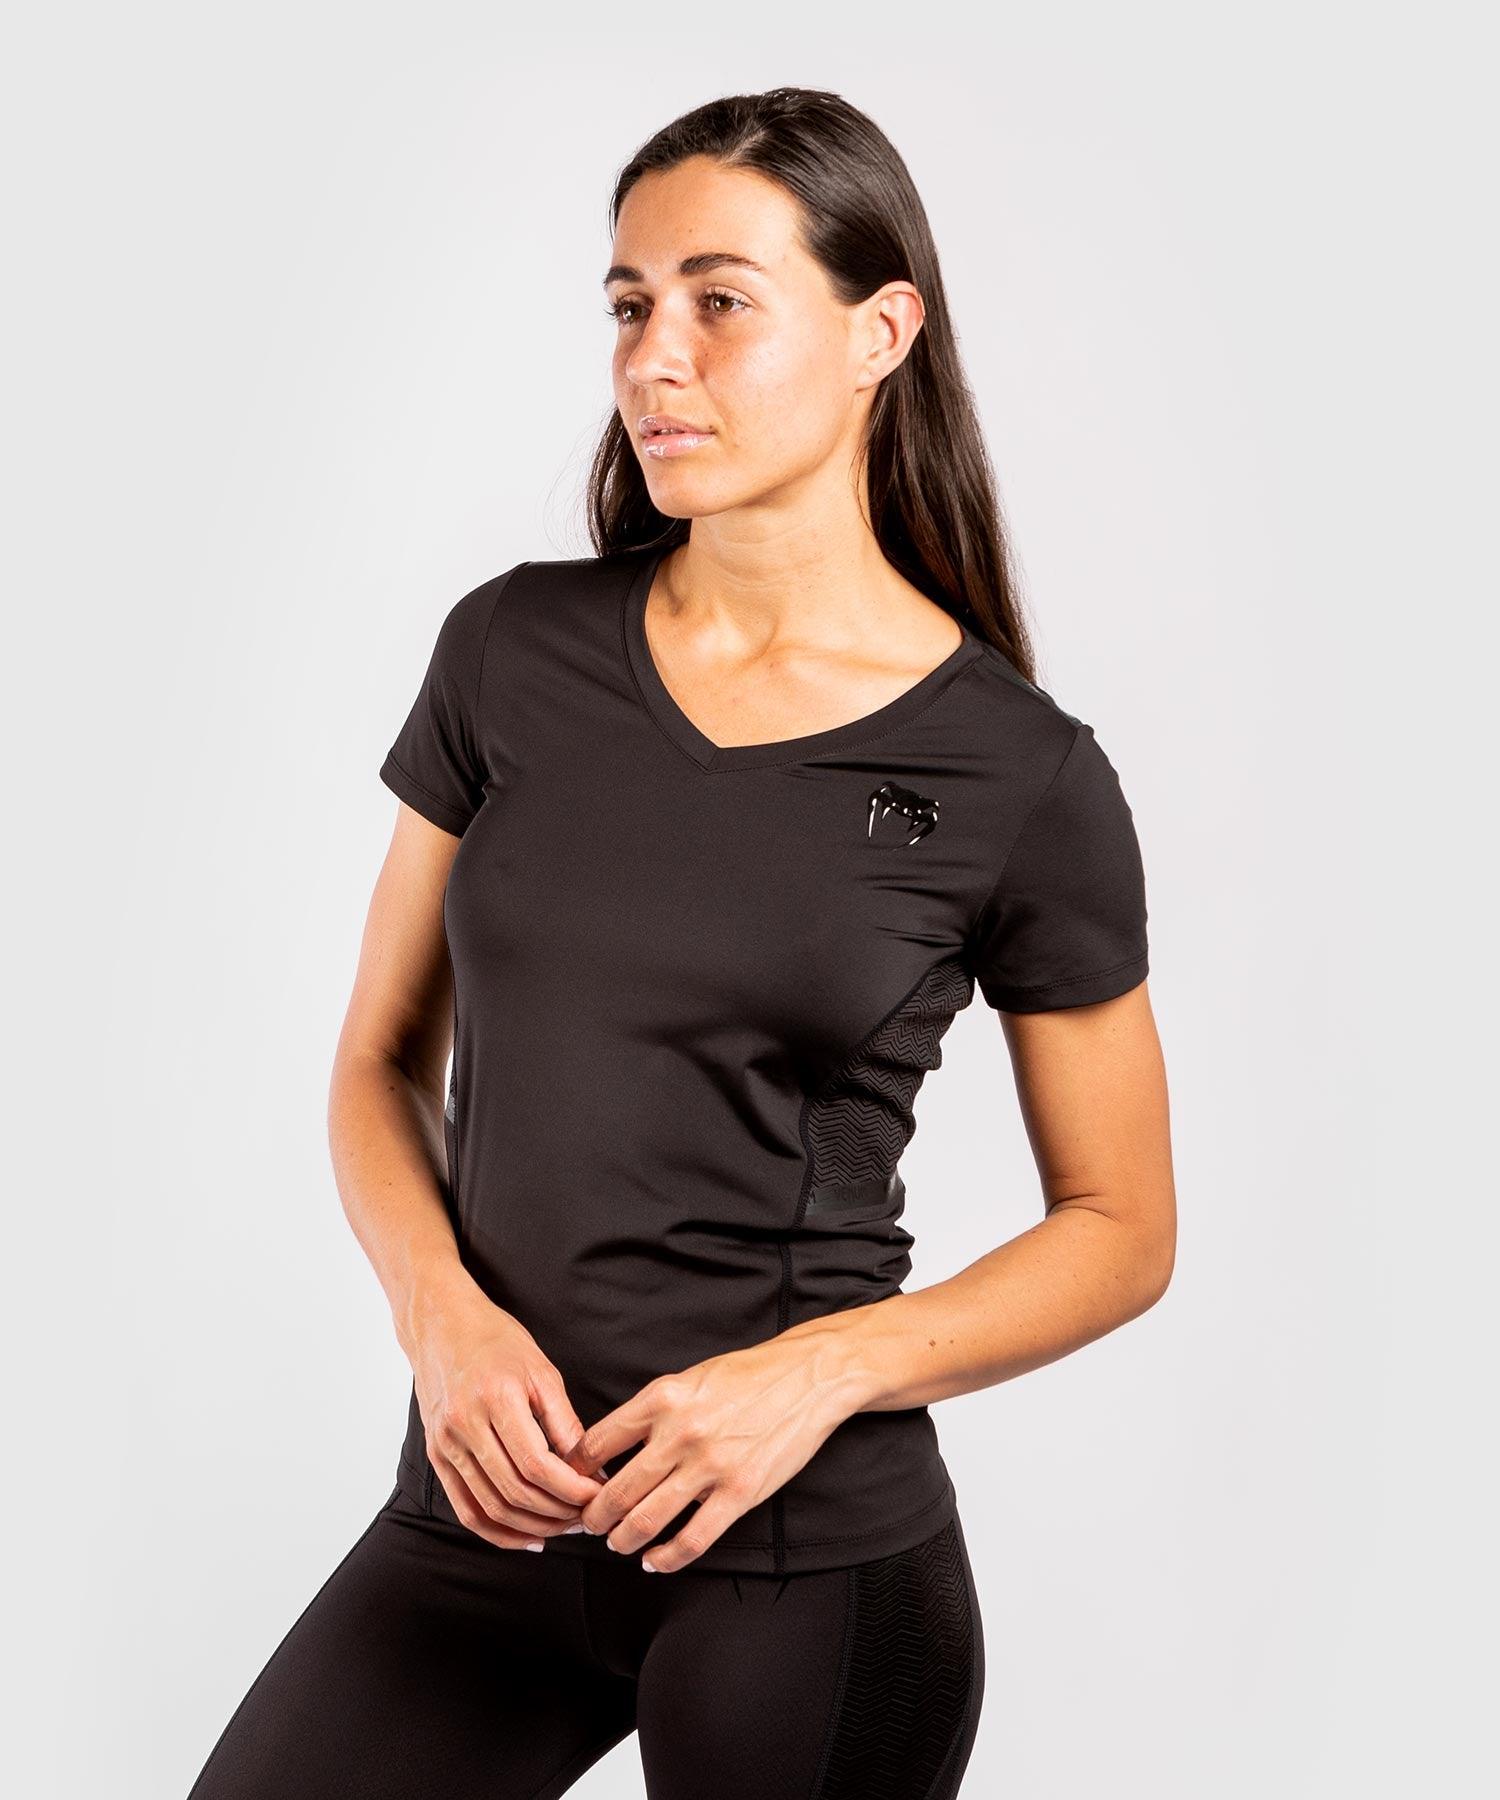 Venum G-Fit Dry-Tech T-shirt - For Women - Black/Black Picture 3